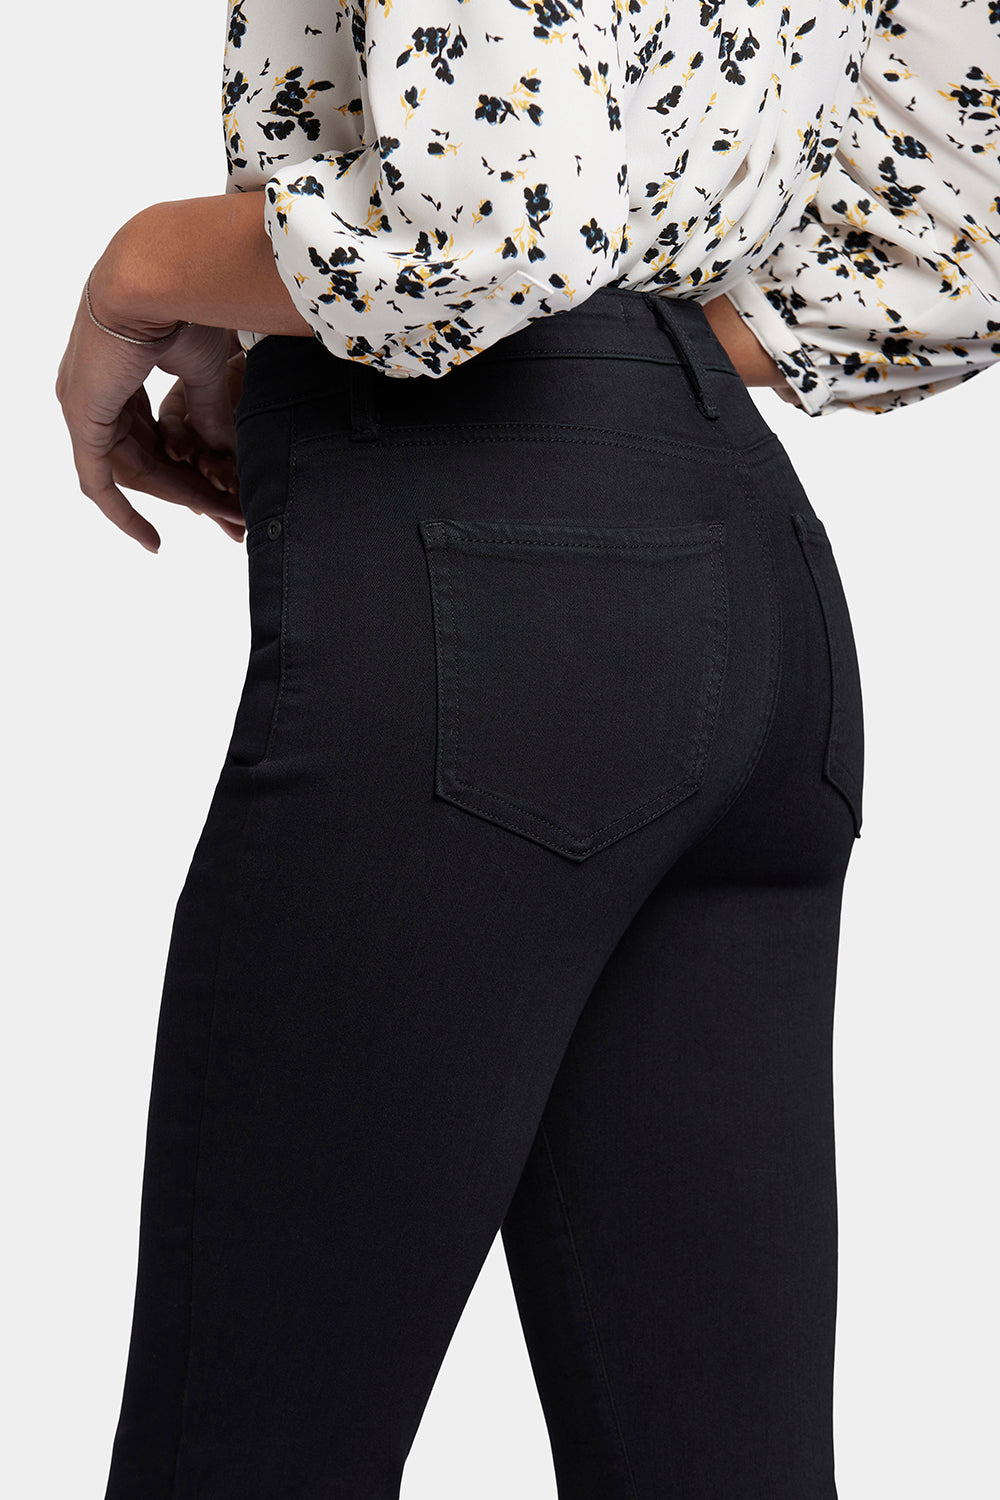 NYDJ Billie Mini Bootcut Jeans In Sure Stretch® Denim With High Rise - Huntley